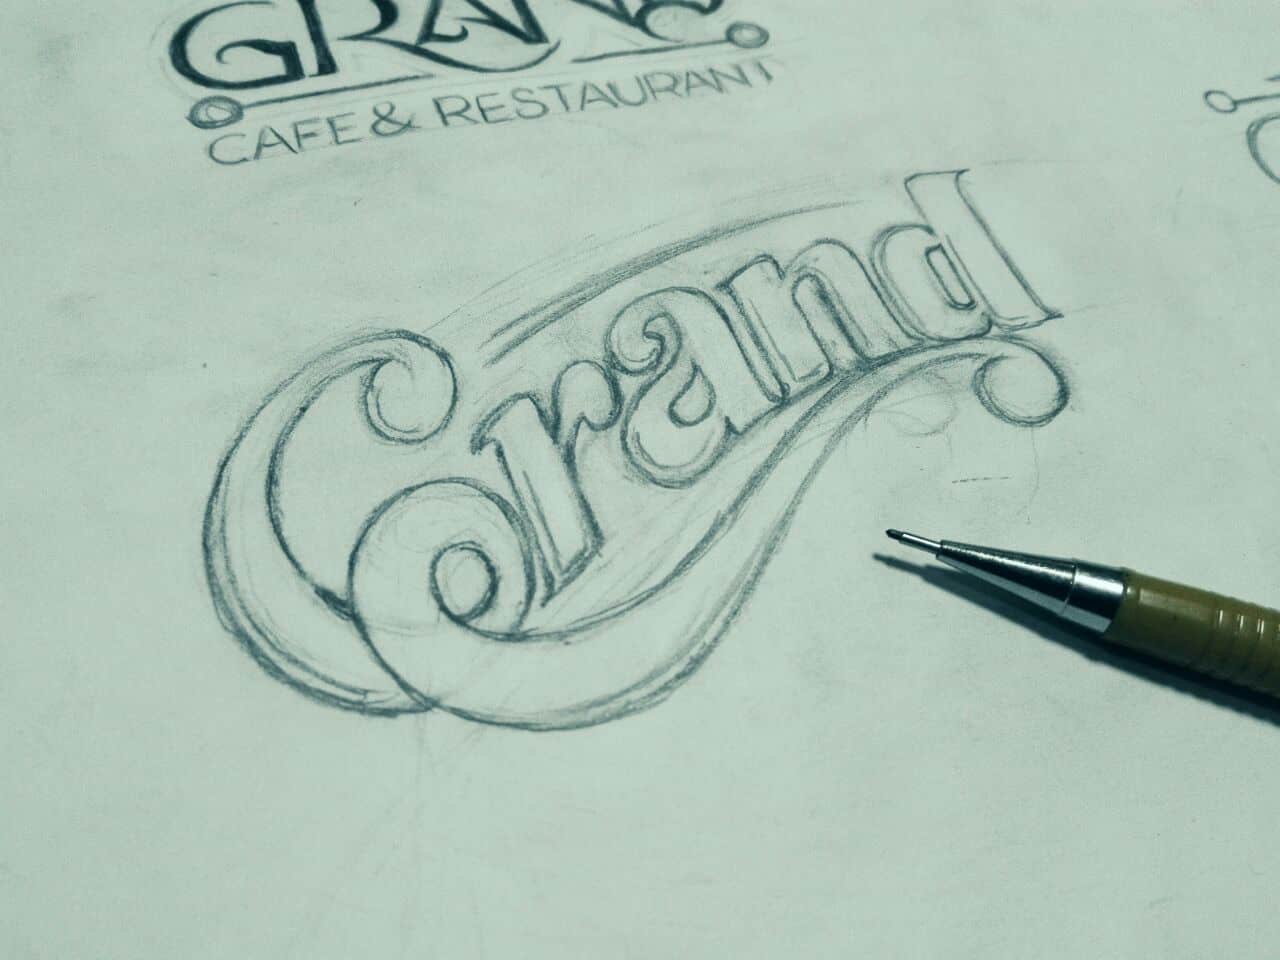 GRAND cafe & restaurant